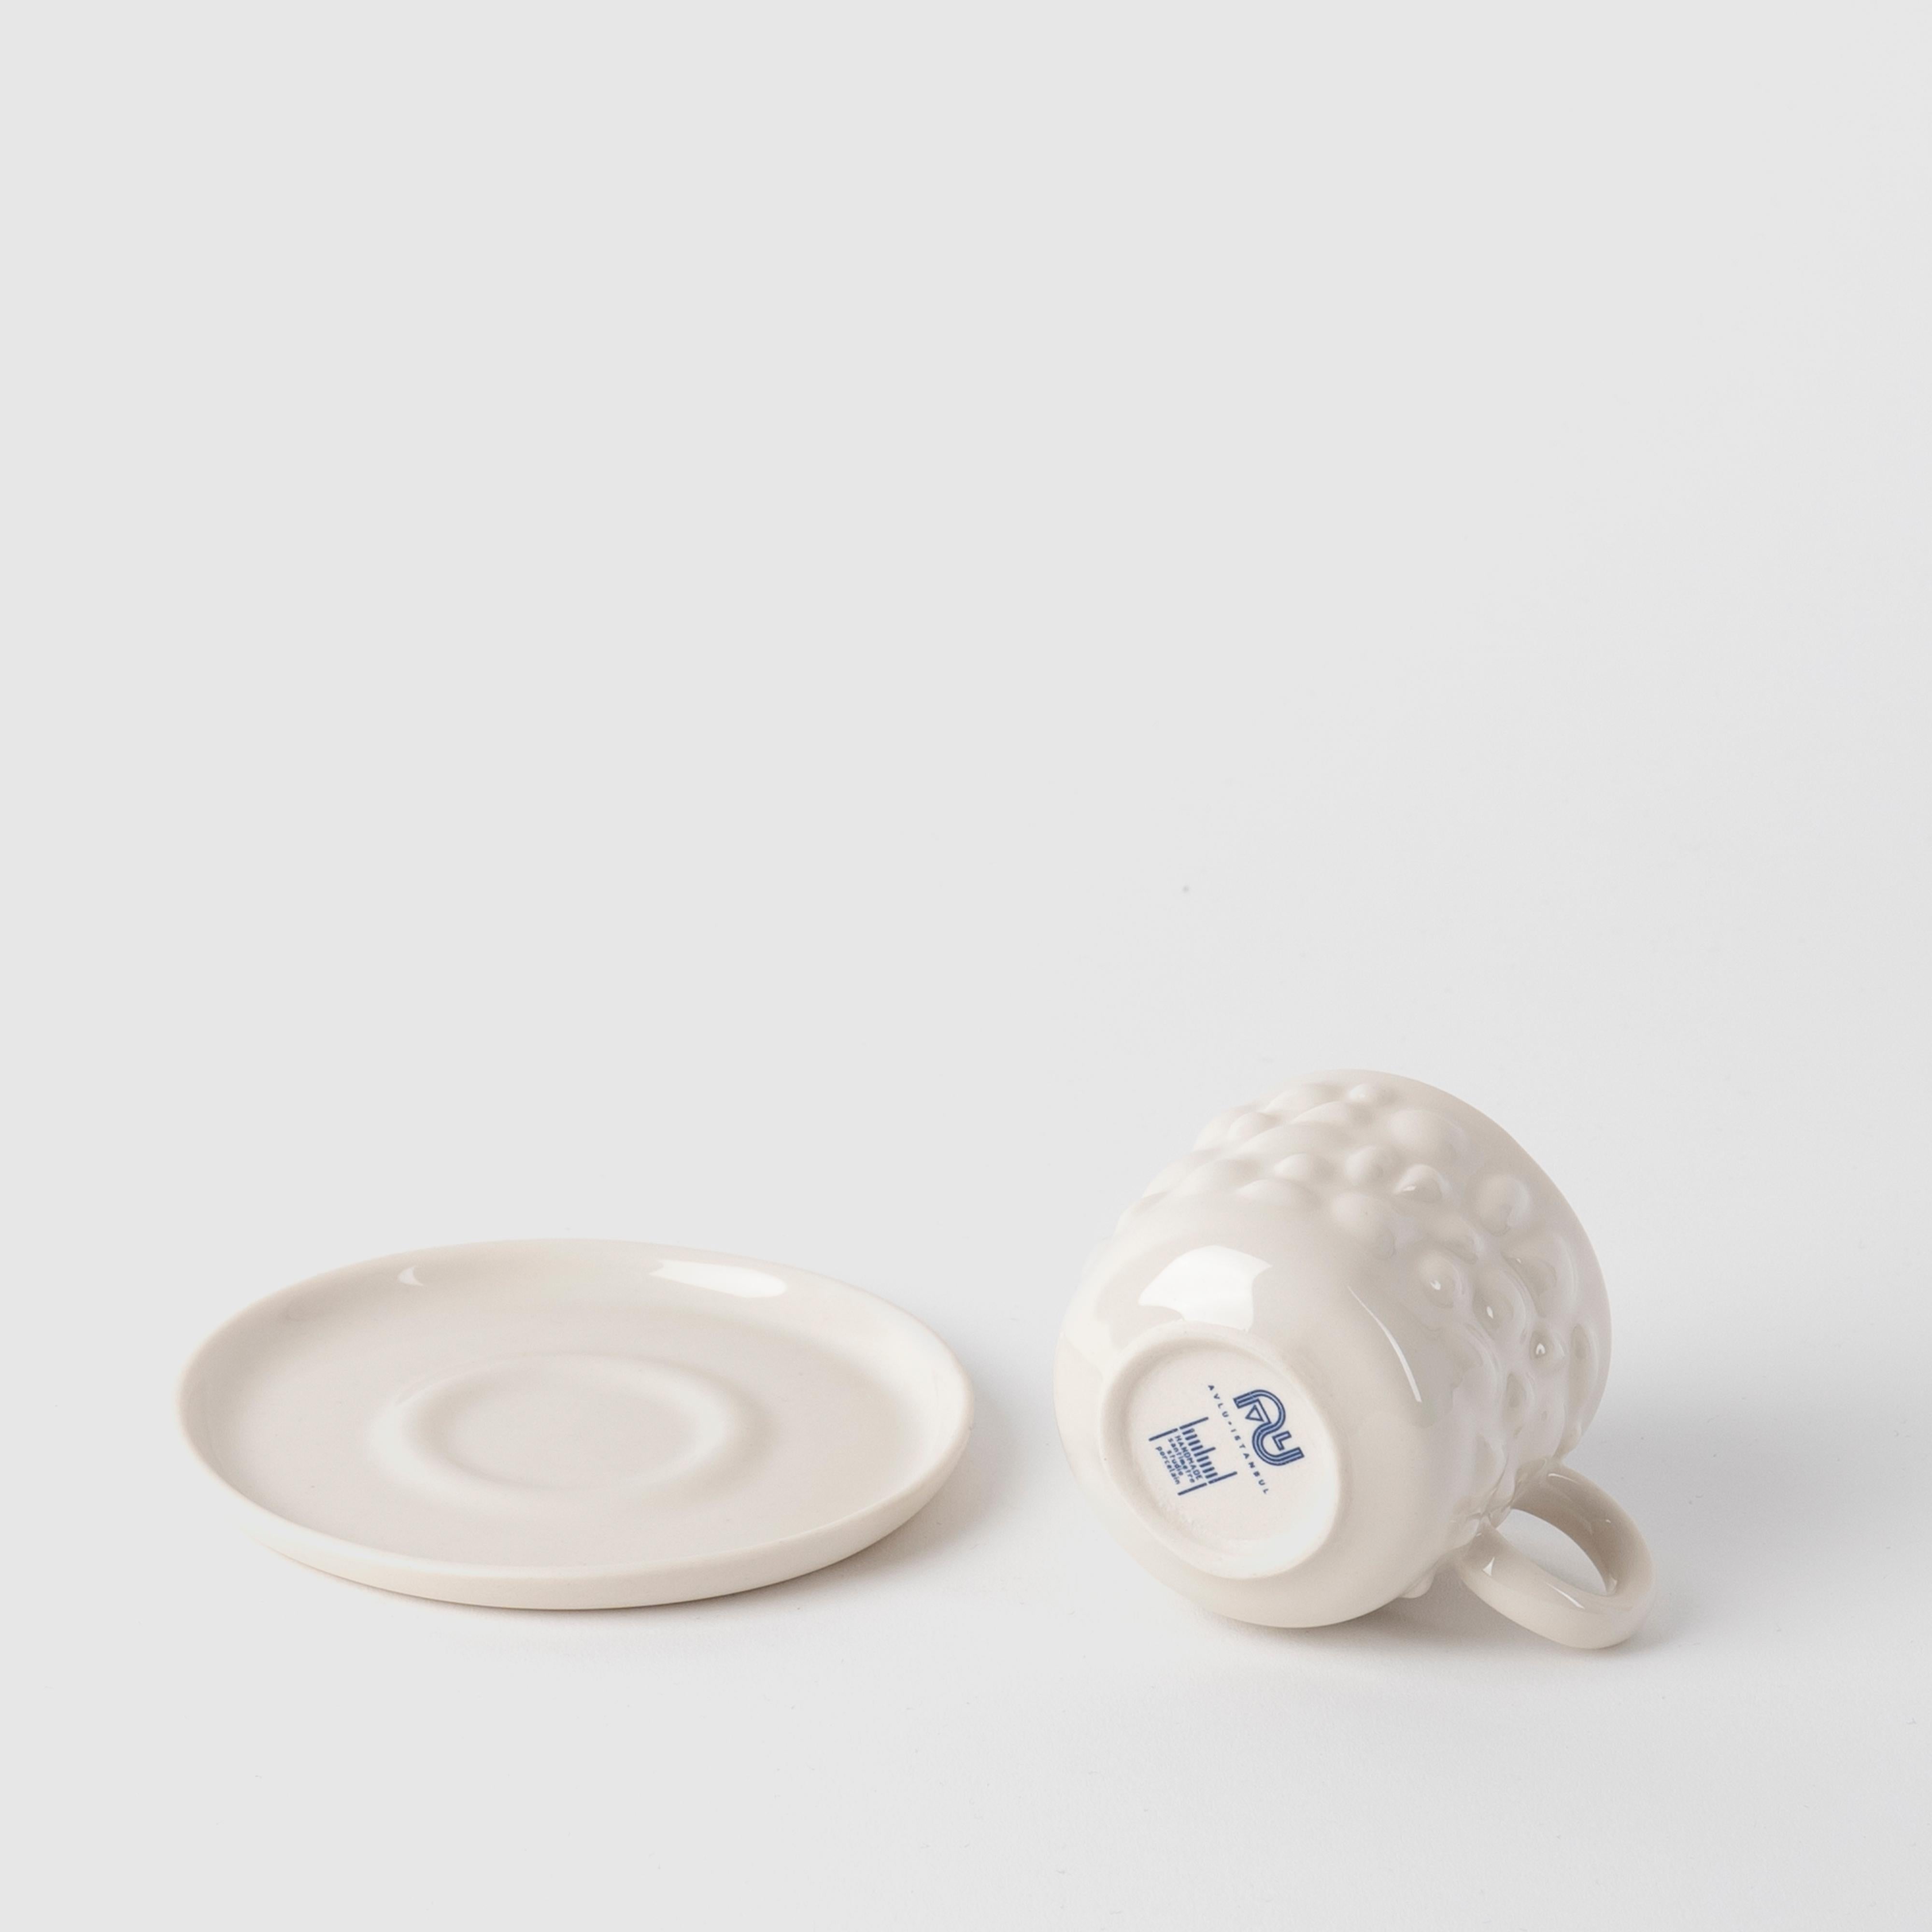 Die Porzellanstücke von Justine sind von den antiken byzantinischen Schmuckstücken inspiriert. Zartes Porzellan verwandelt Tassen in zeitlose Designobjekte, indem es die Perlen- und Steindetails von Schmuckstücken in fließende Formen